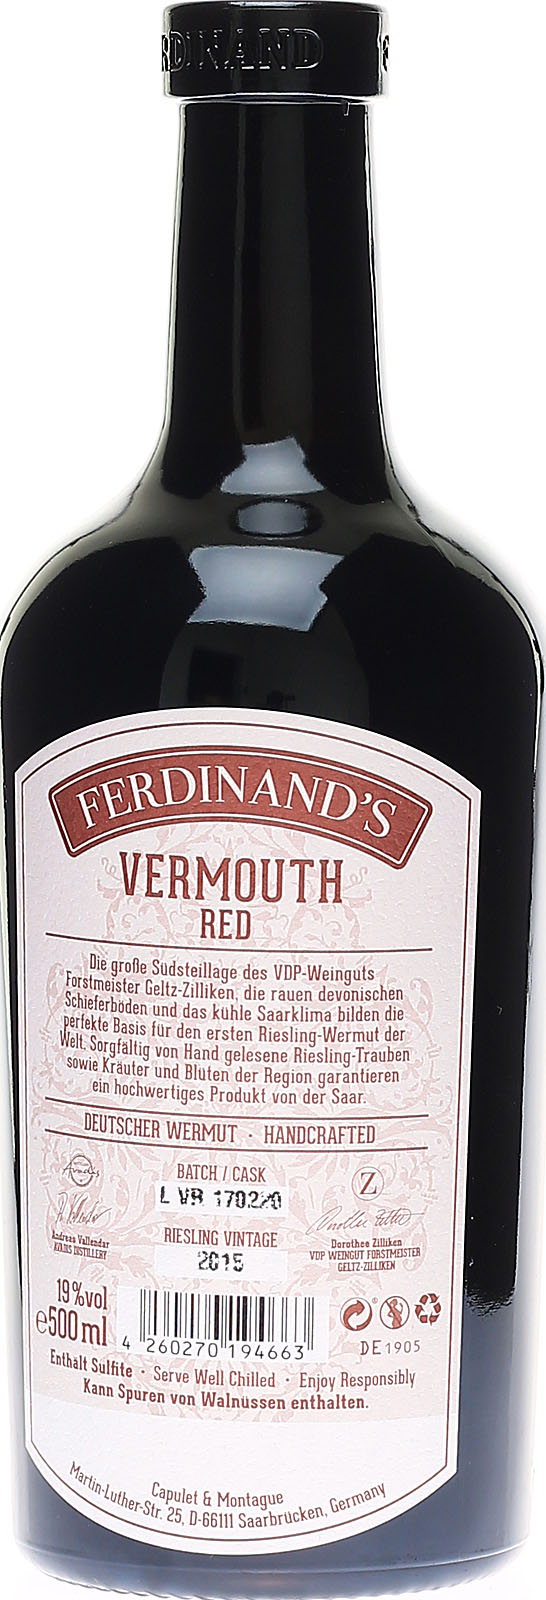 Deuts Vermouth, Ferdinand\'s hochwertiger Red aus Wermut